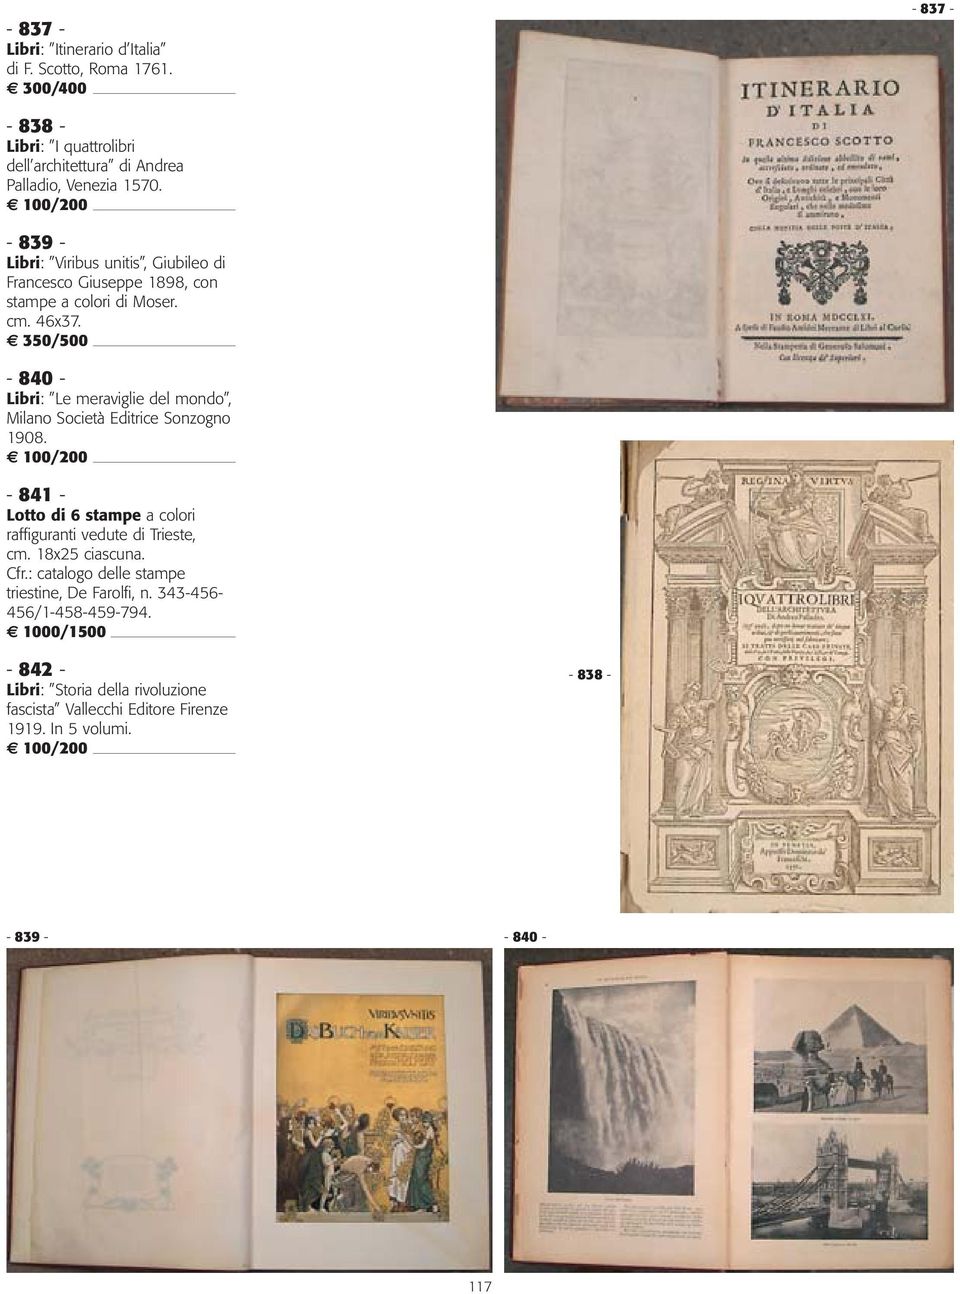 350/500-840 - Libri: Le meraviglie del mondo, Milano Società Editrice Sonzogno 1908.